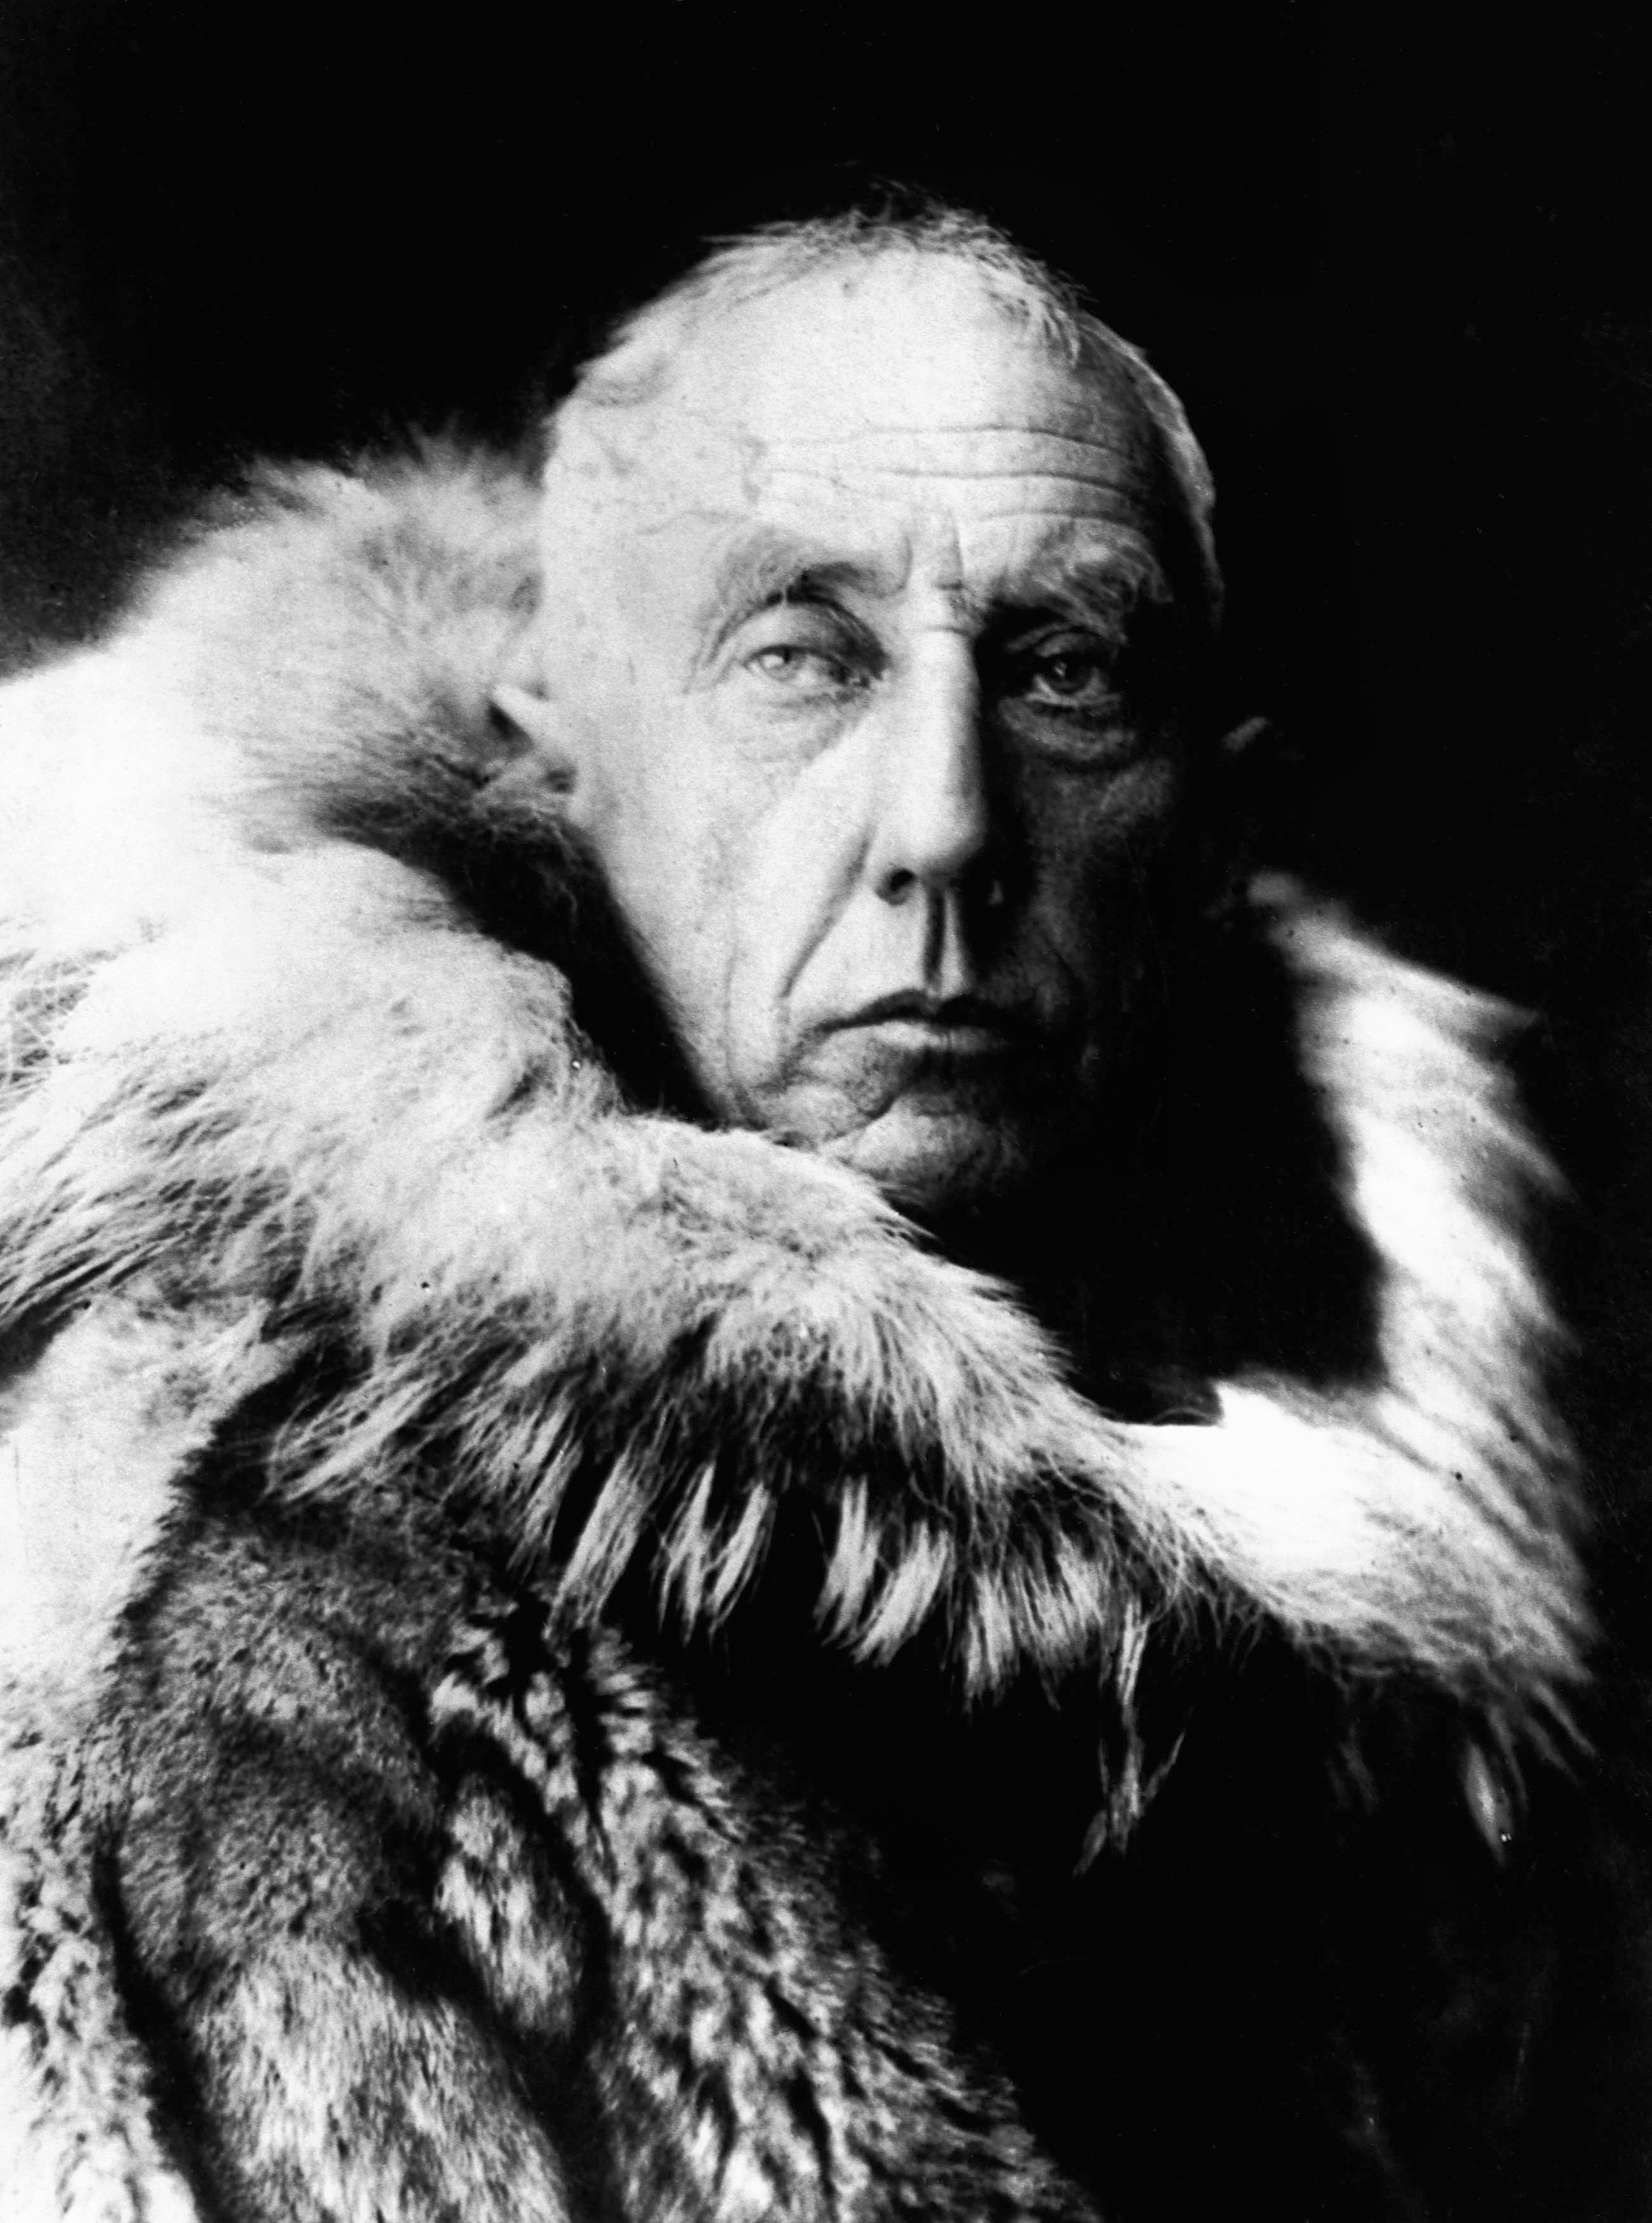  Talambuhay ni Roald Amundsen